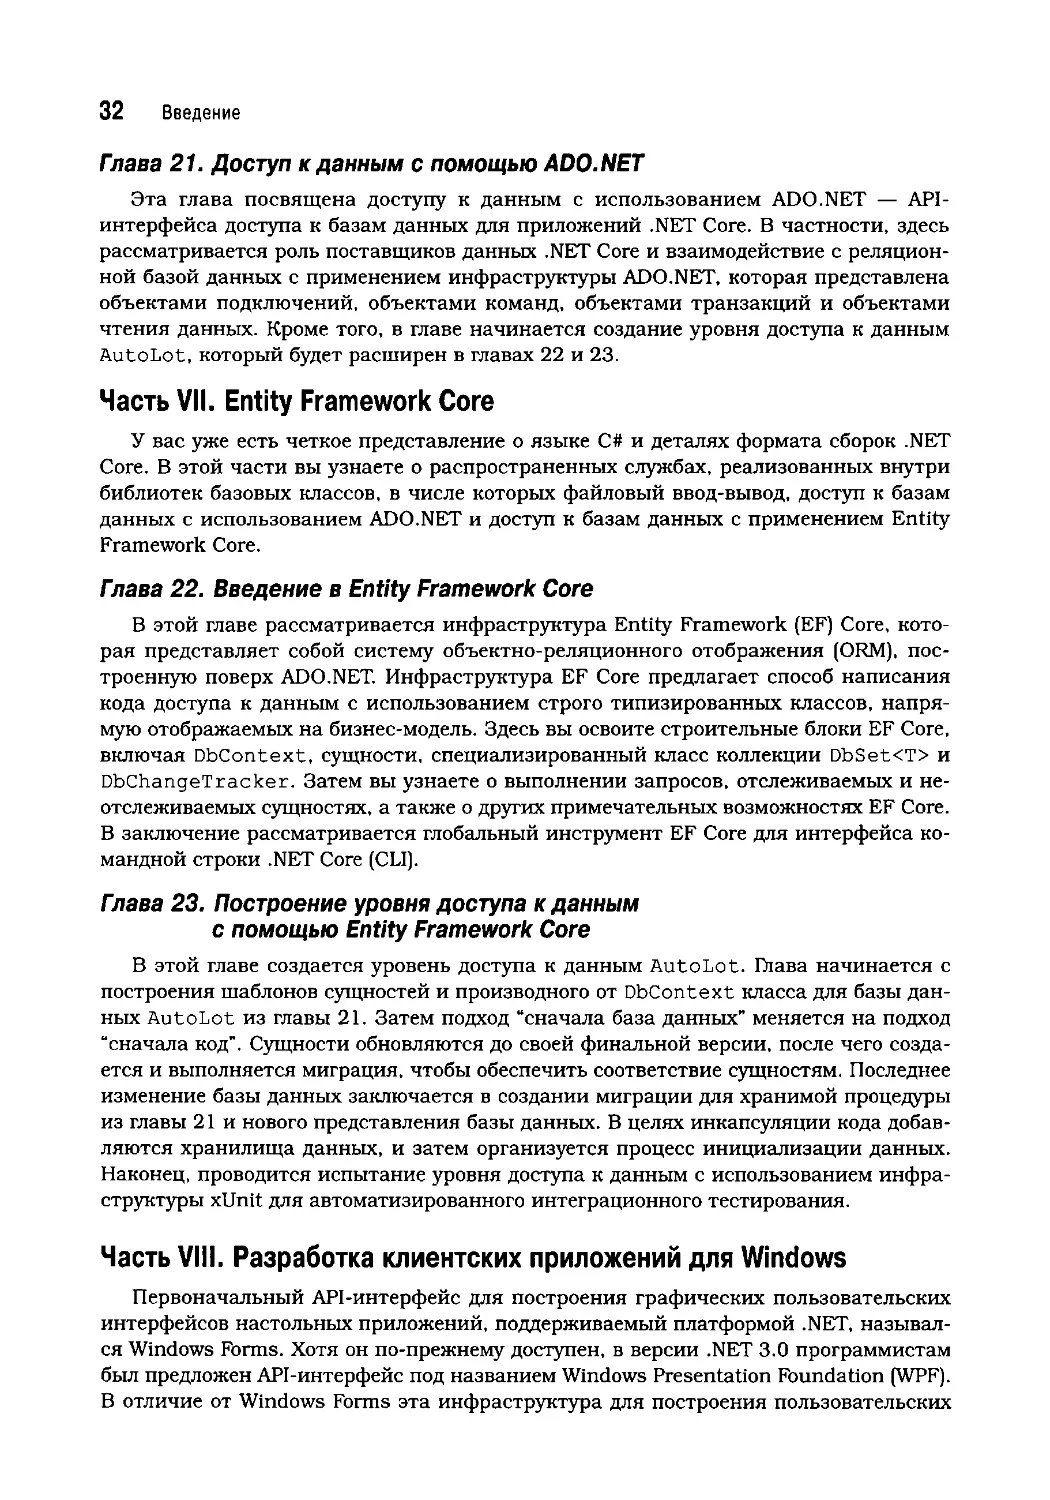 Часть VII. Entity Framework Core
Часть VIII. Разработка клиентских приложений для Windows